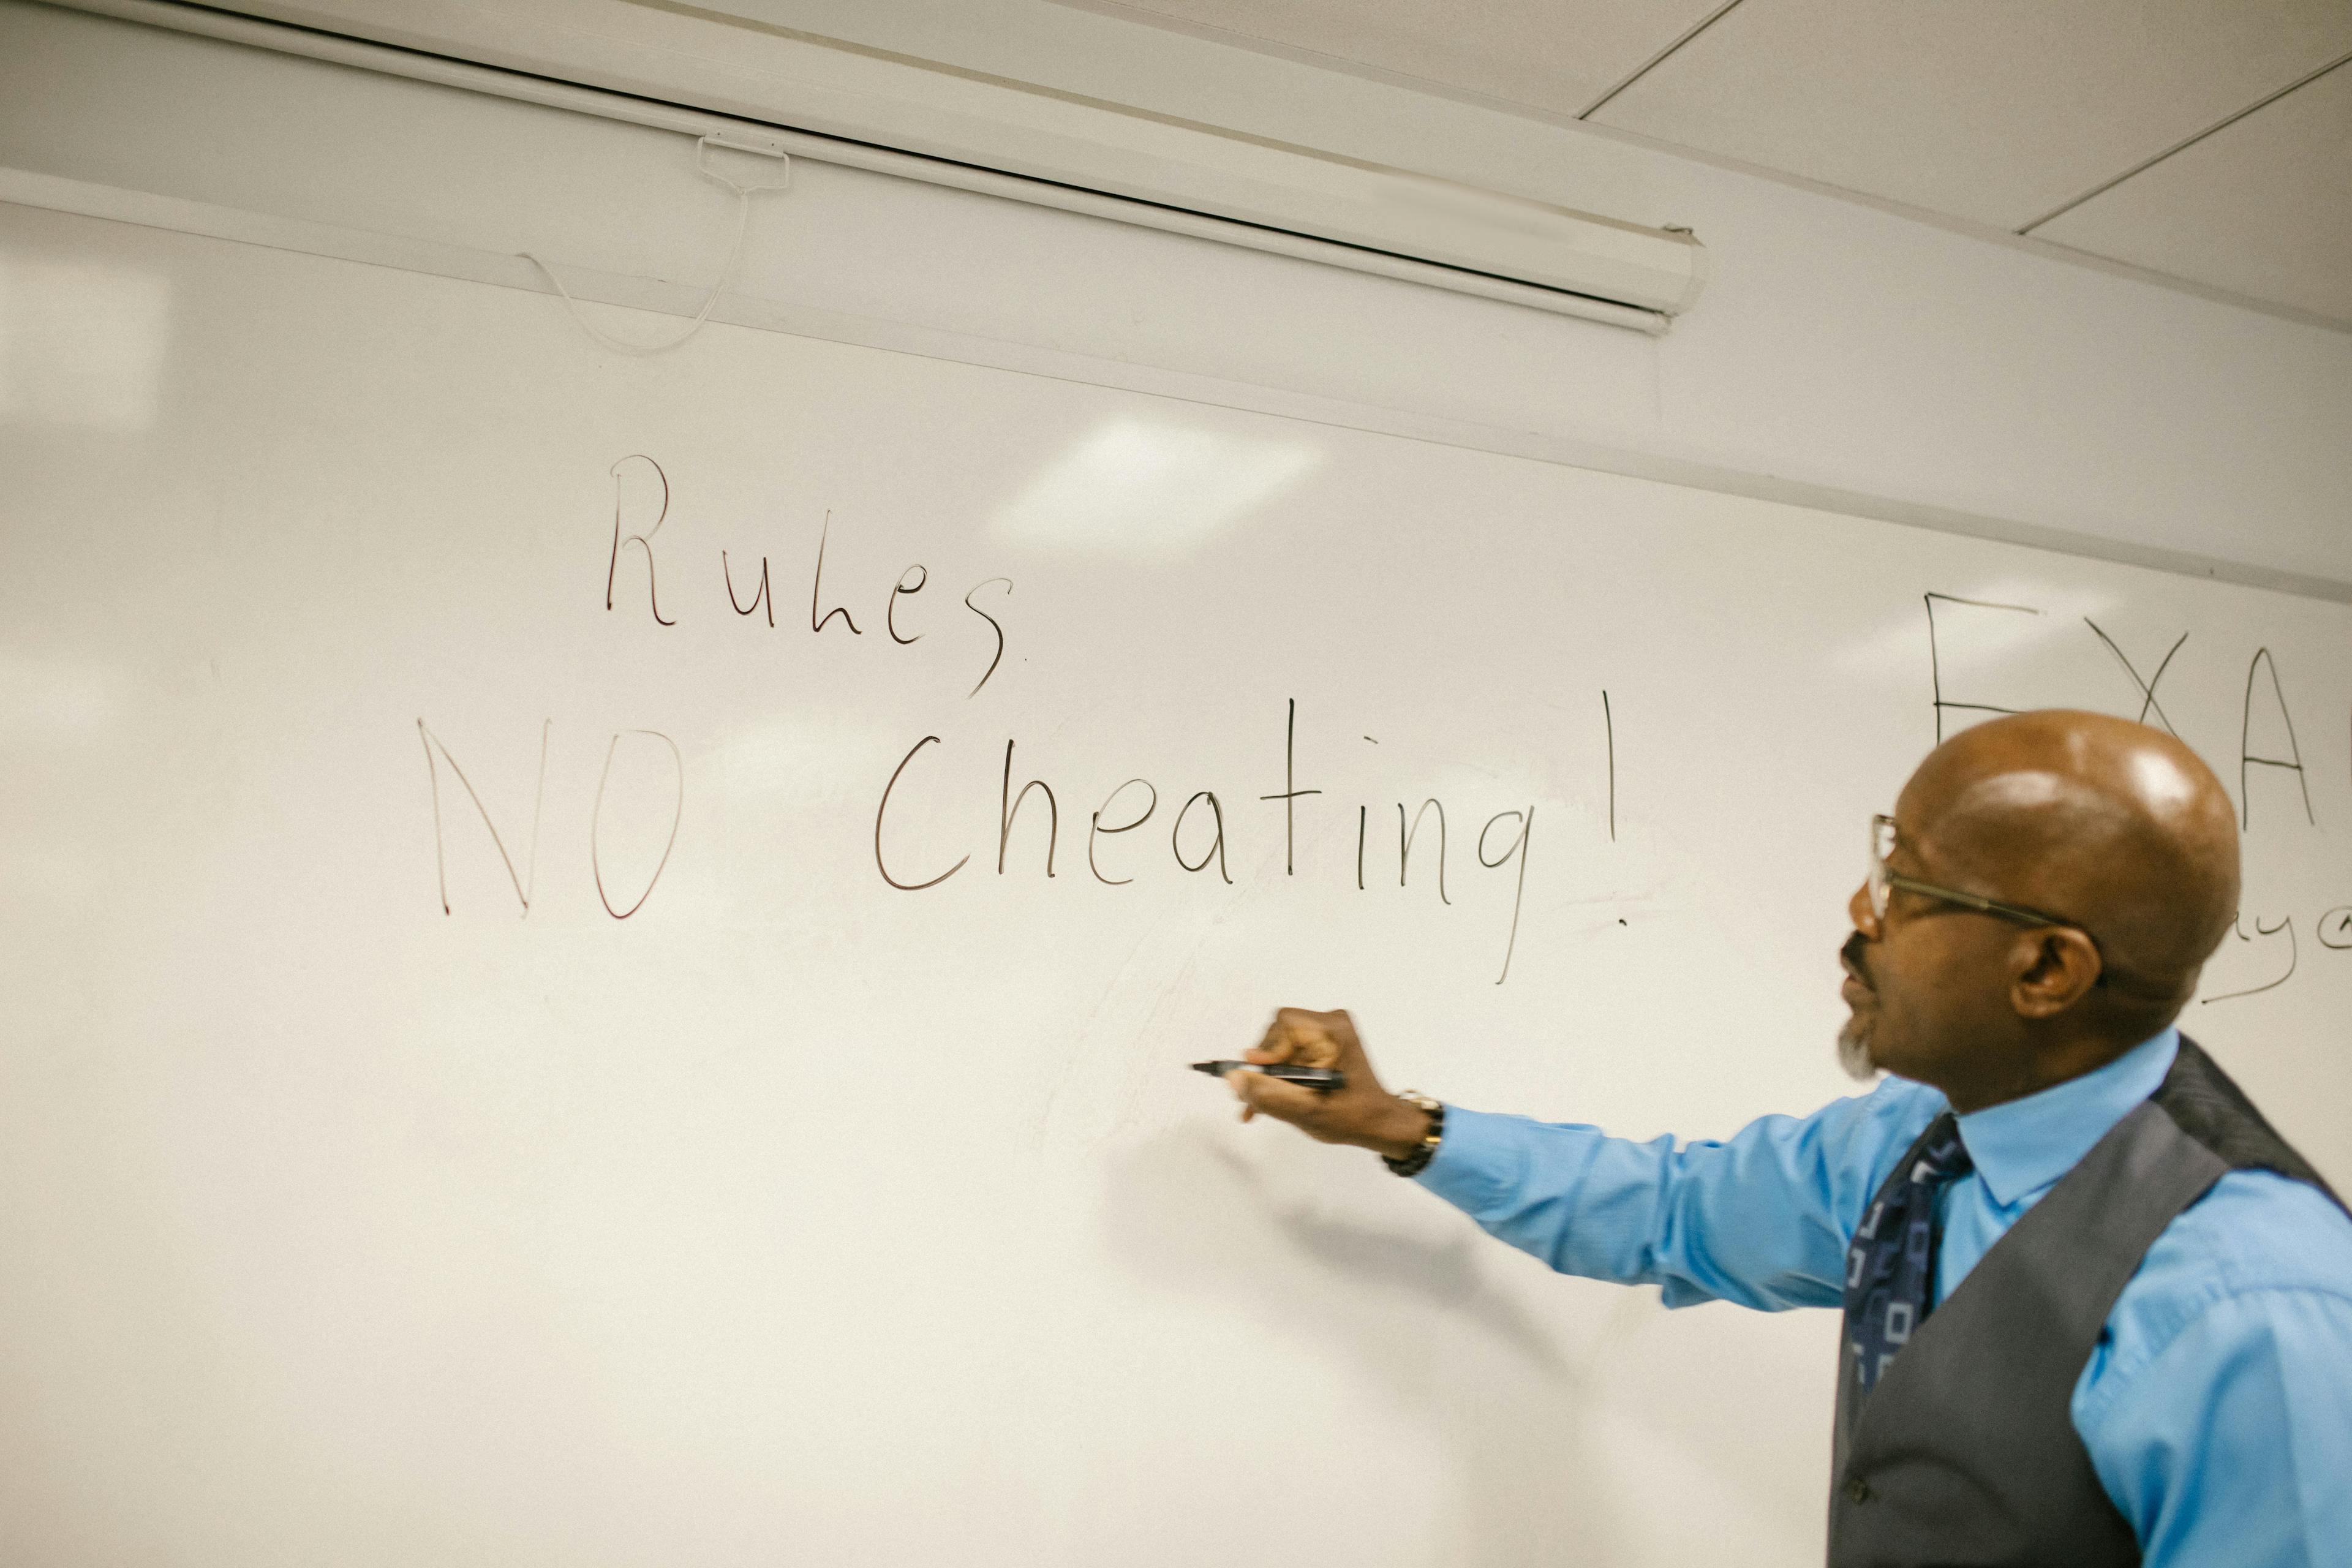 no cheating